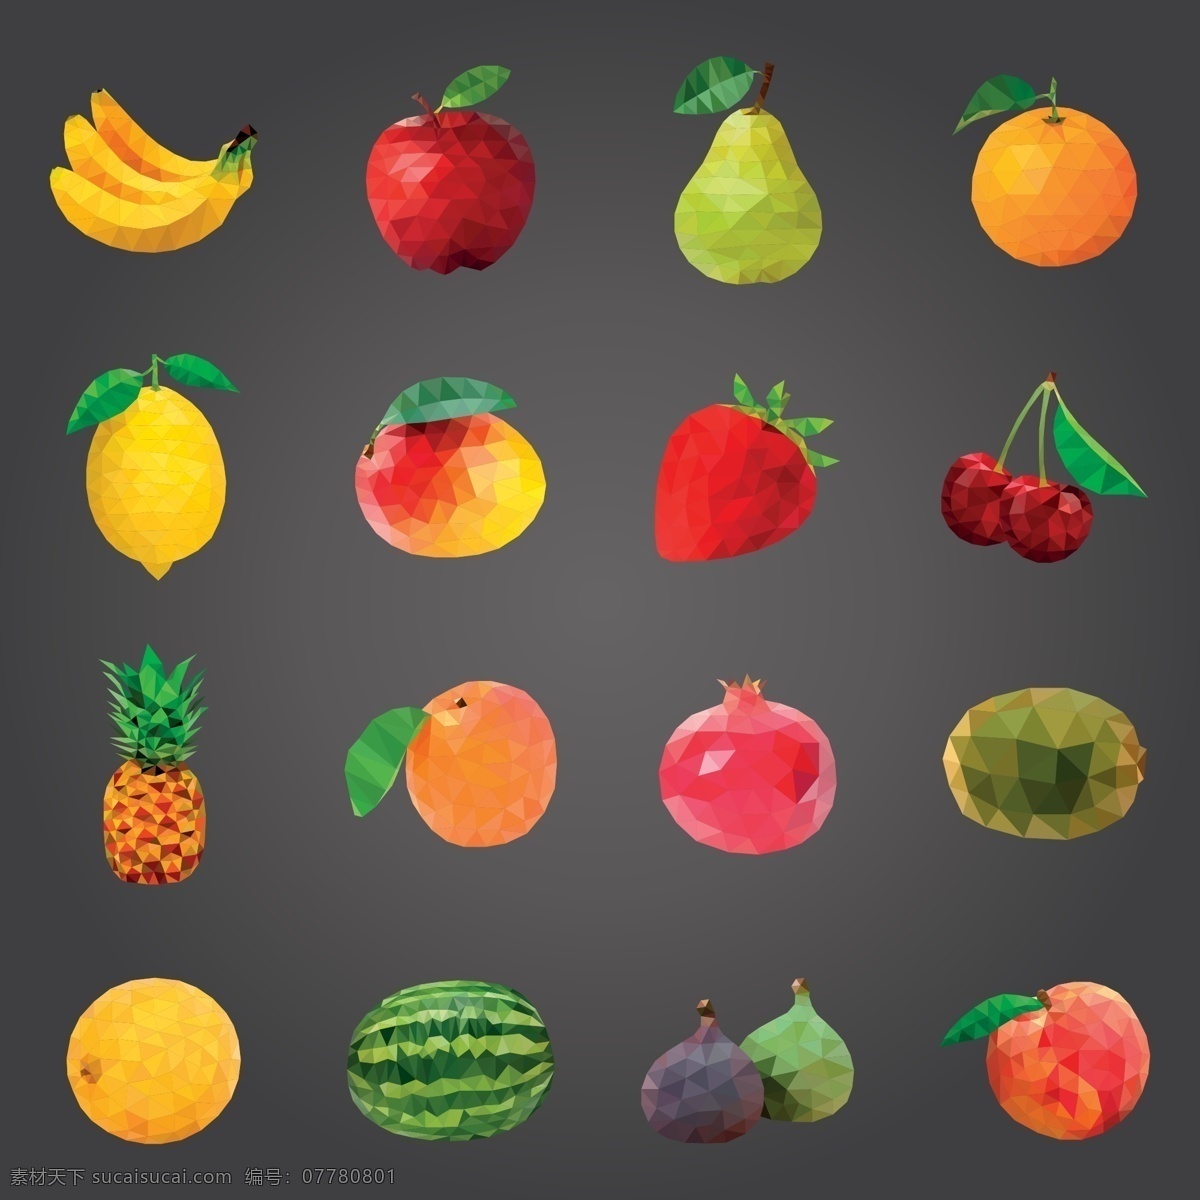 色块 层叠 水果 矢量 色块层叠水果 香蕉 苹果 梨 桔子 樱桃 菠萝 石榴 西瓜柠檬 桃子 草莓 矢量水果 标志图标 其他图标